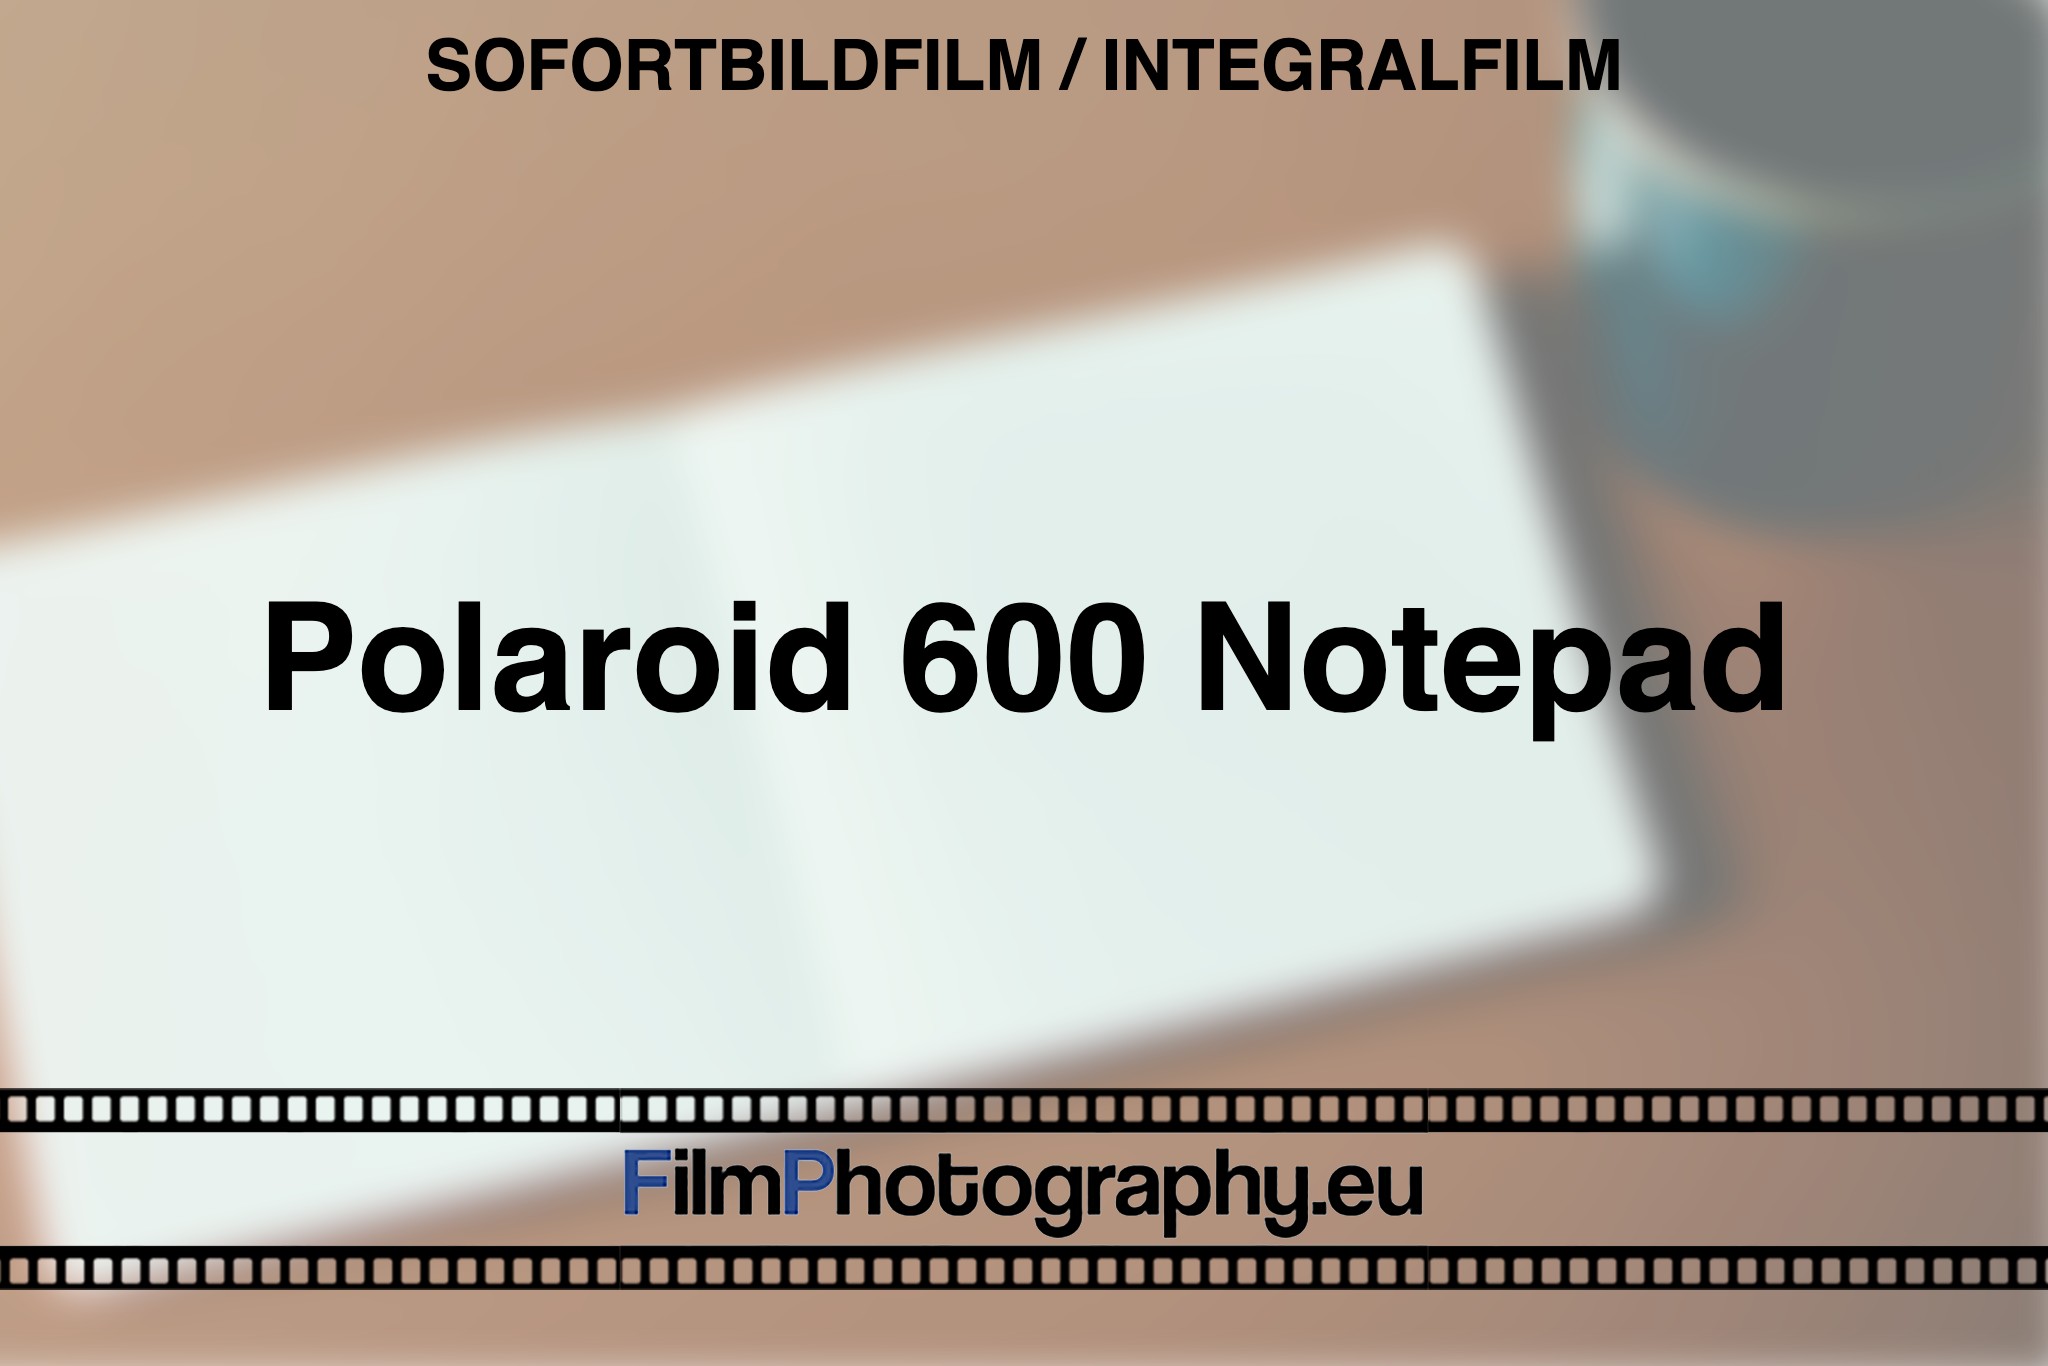 polaroid-600-notepad-sofortbildfilm-integralfilm-fp-bnv